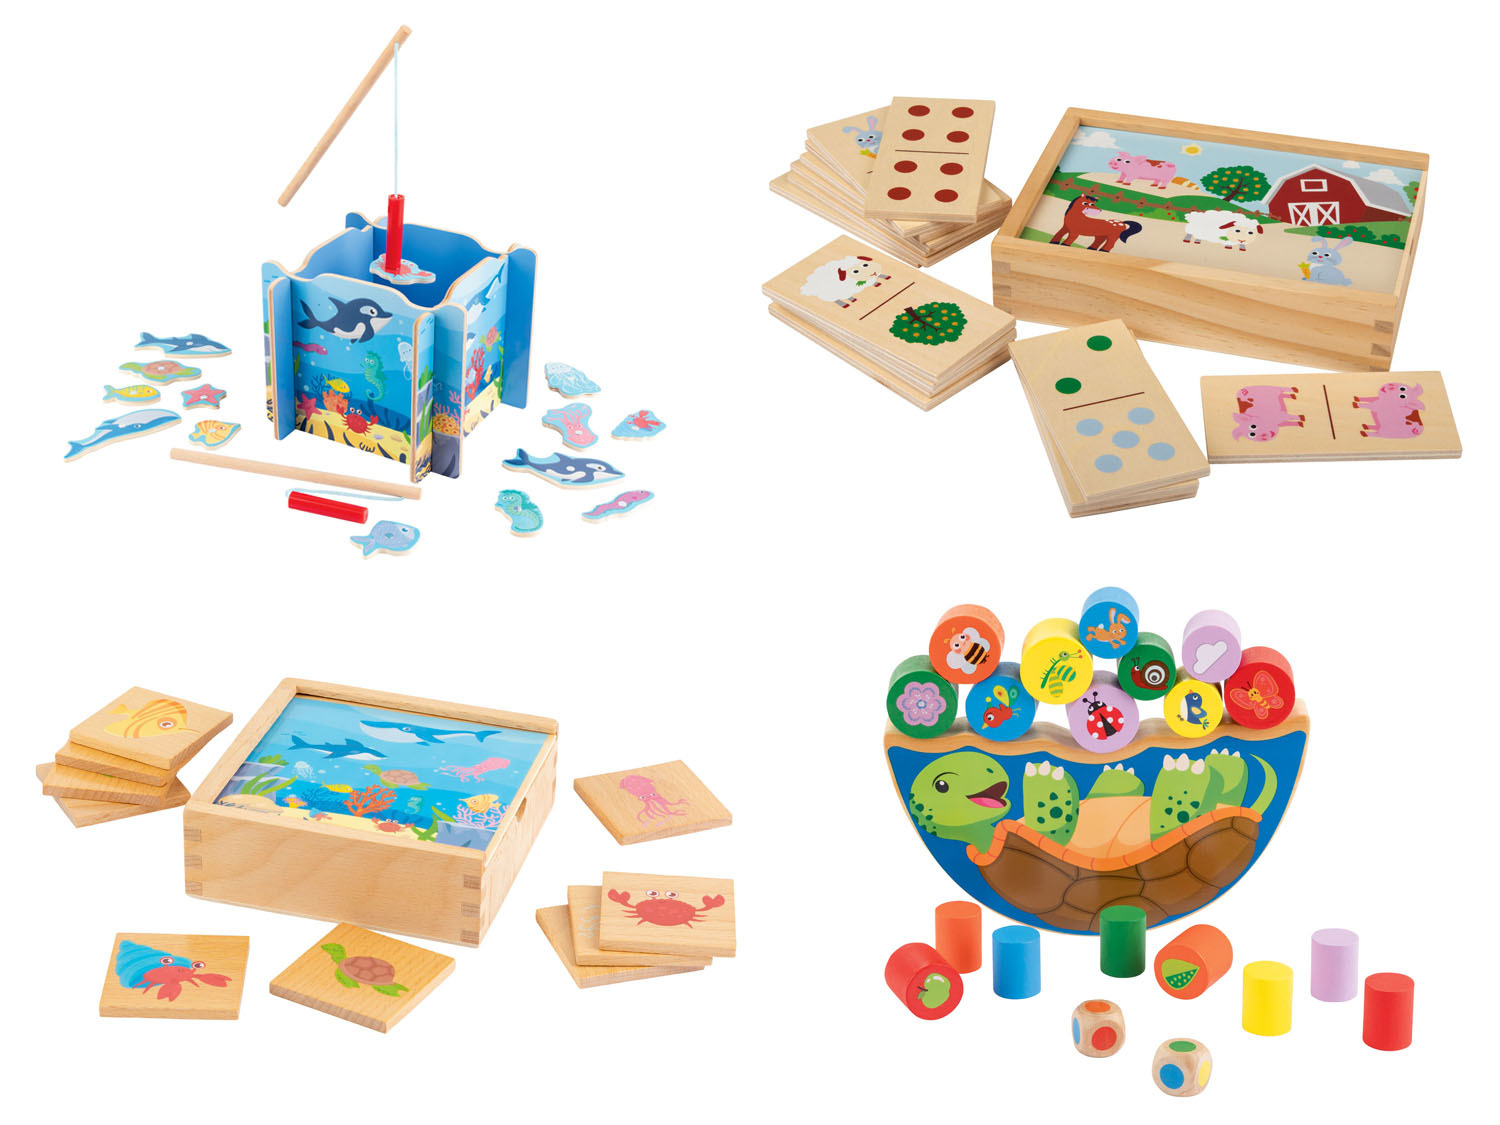 Sandalen hardware Hectare Playtive Houten speelgoed online kopen op Lidl.be